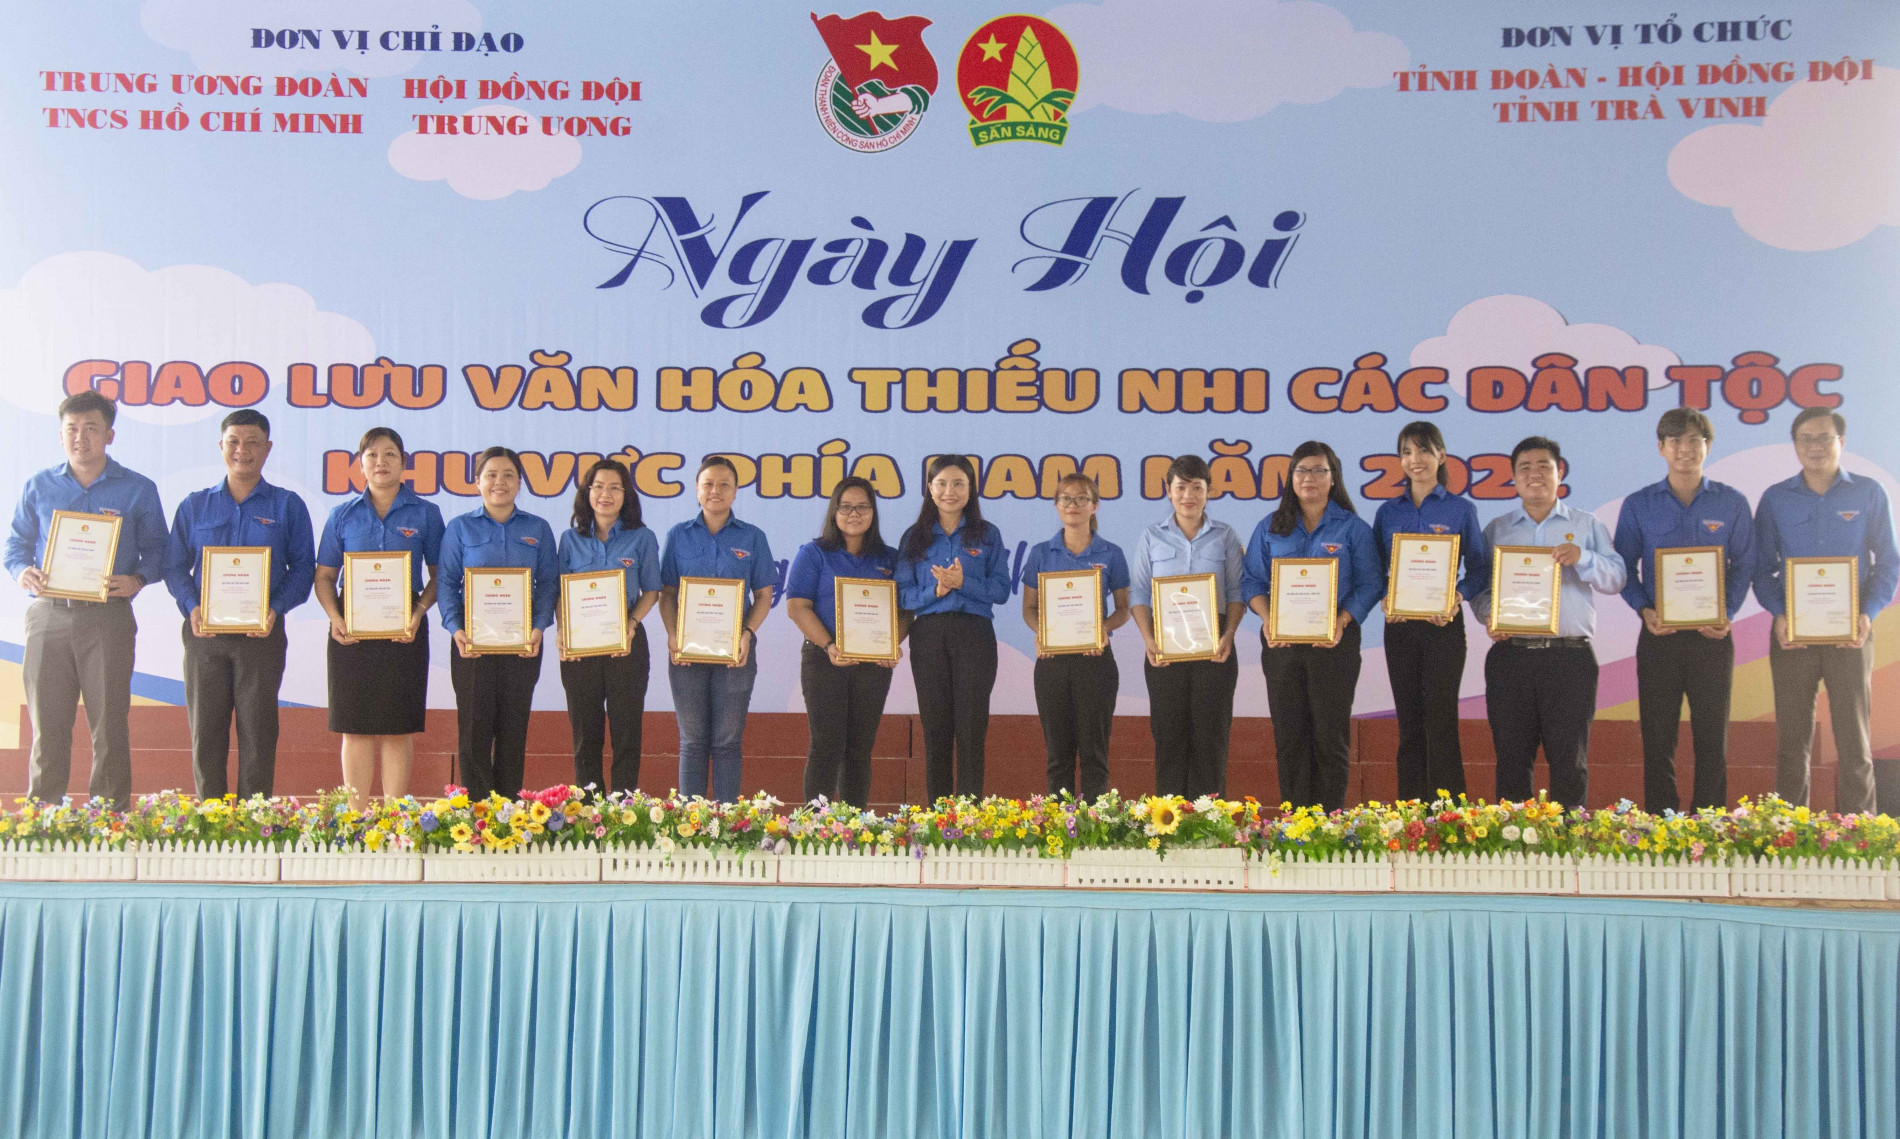 Chị Nguyễn Phạm Duy Trang - Bí thư Ban Chấp hành Trung ương Đoàn, Chủ tịch Hội đồng Đội Trung ương trao chứng nhận cho 14 tỉnh, thành phố tham gia liên hoan cấp khu vực.